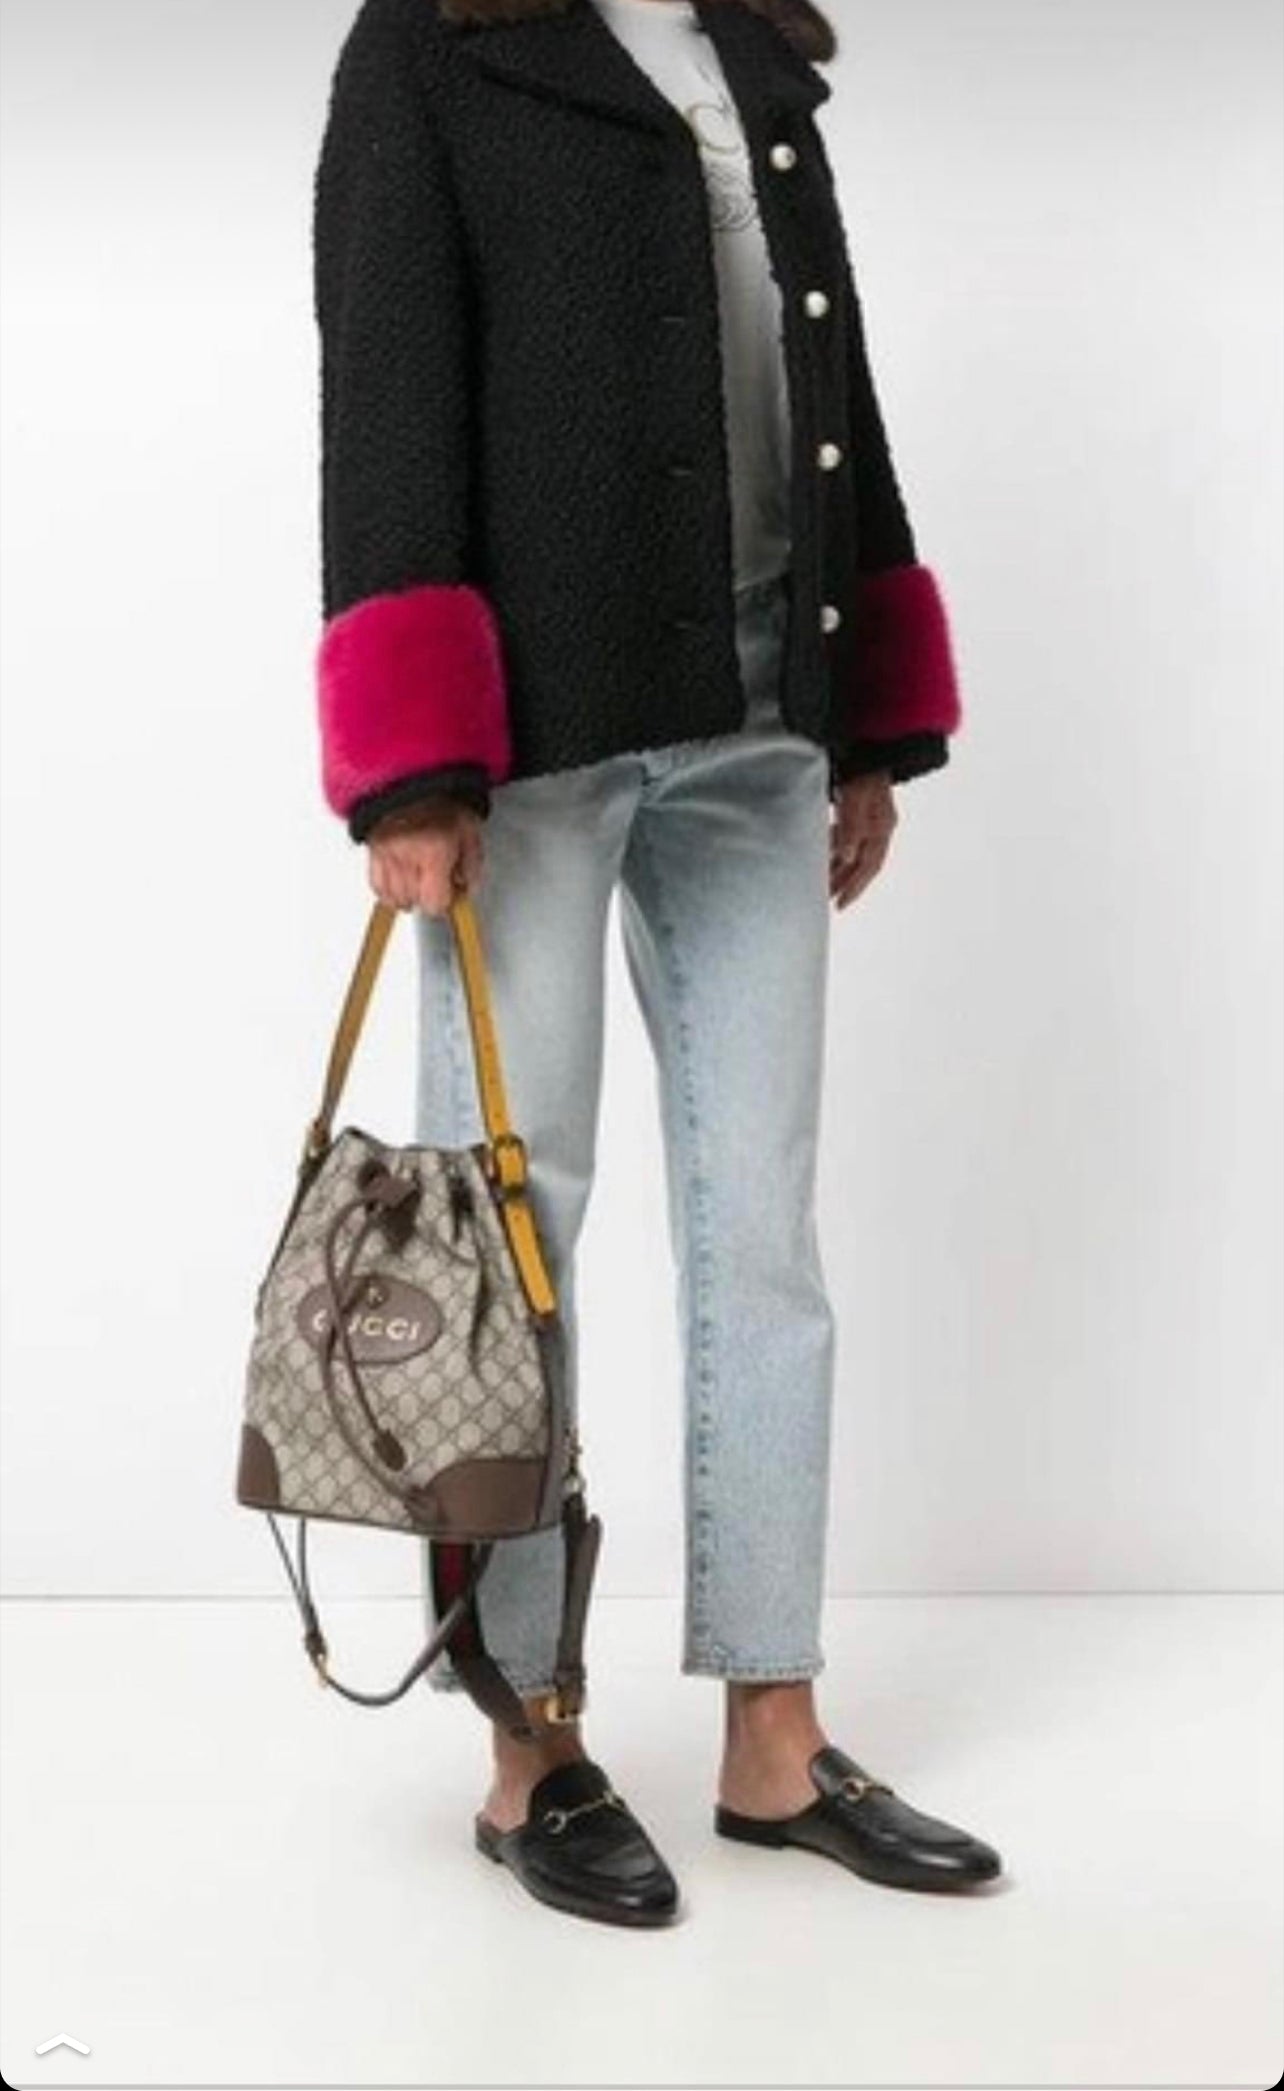 Gucci Neo-Vintage Backpack Shoulder Bag